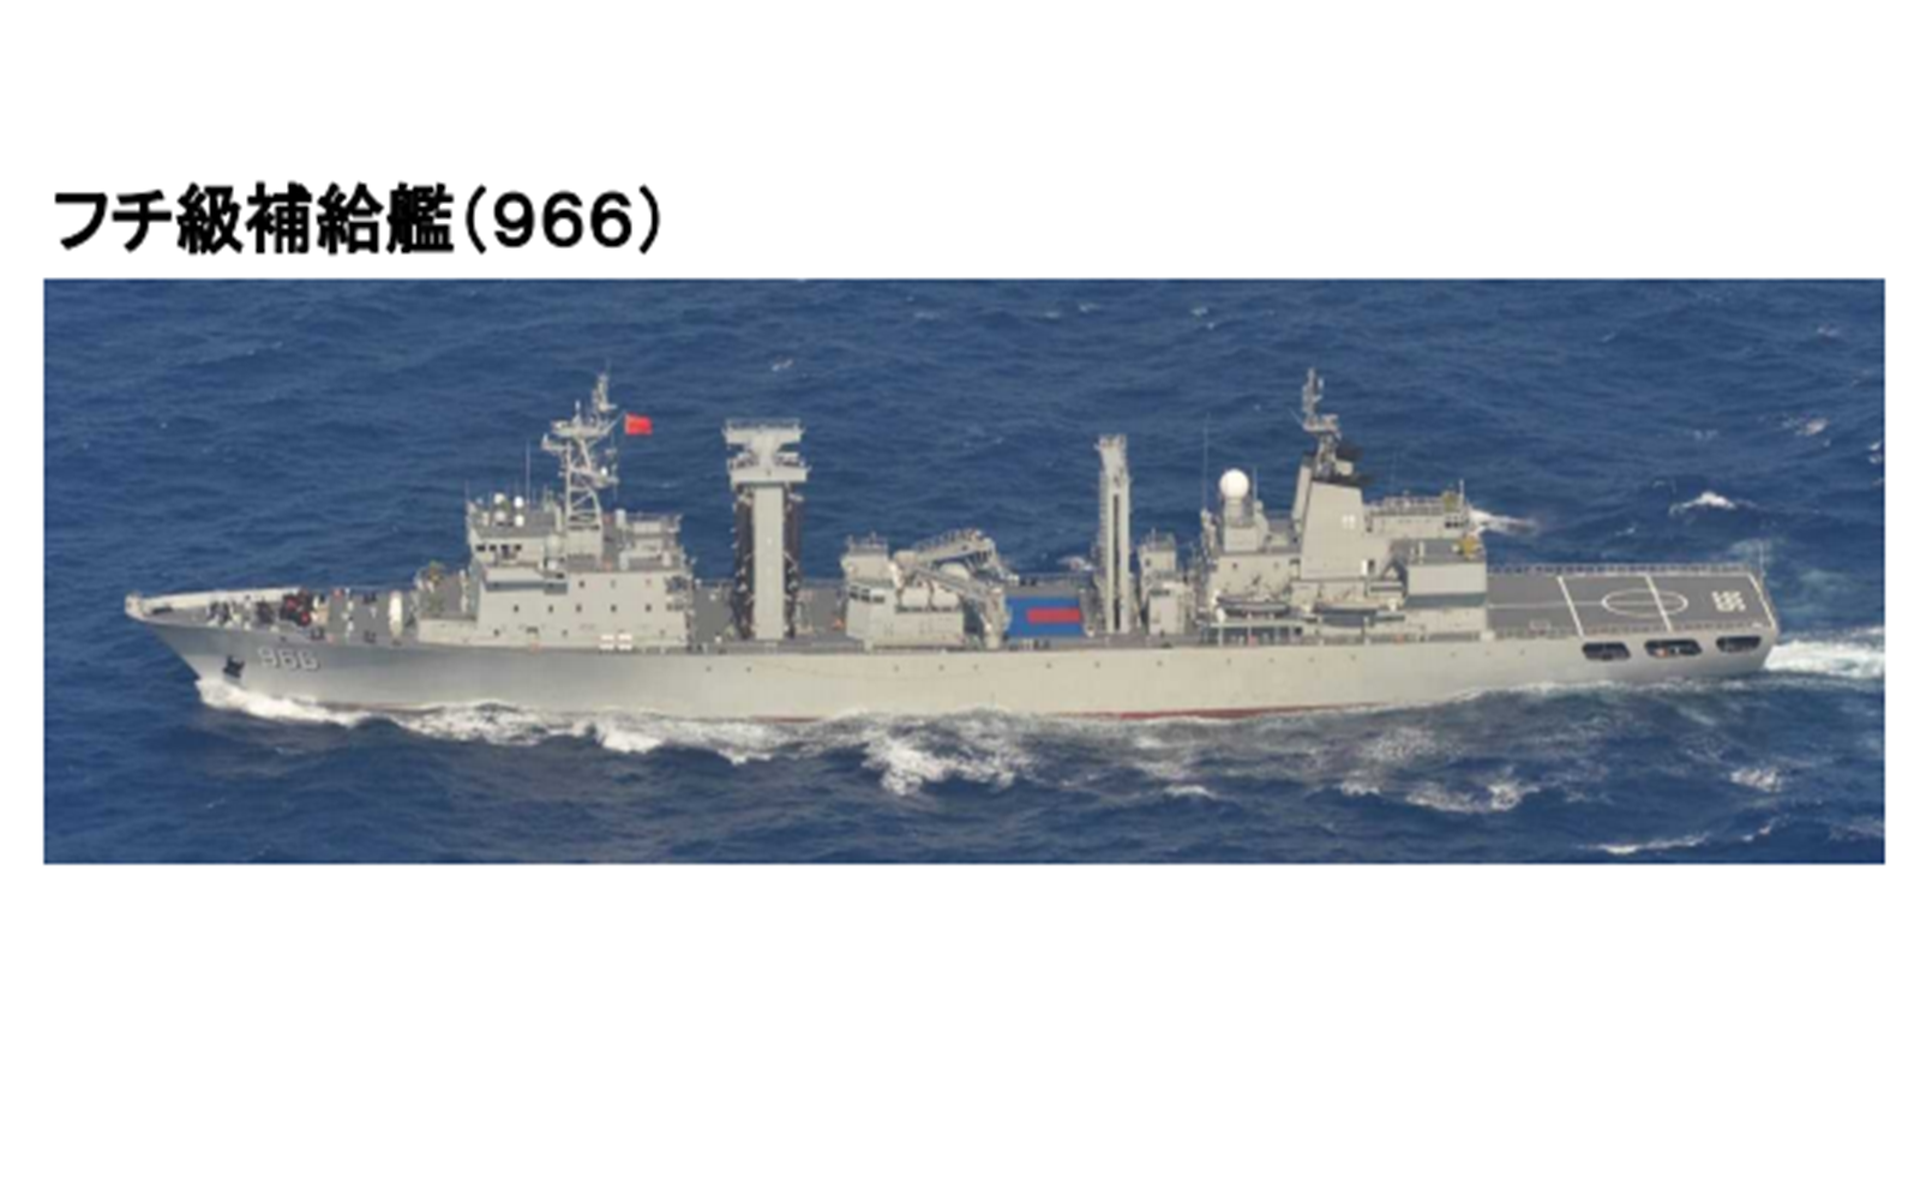 优享资讯 3艘中国军舰穿越宫古海峡强硬警告美日法首次联合军演 图